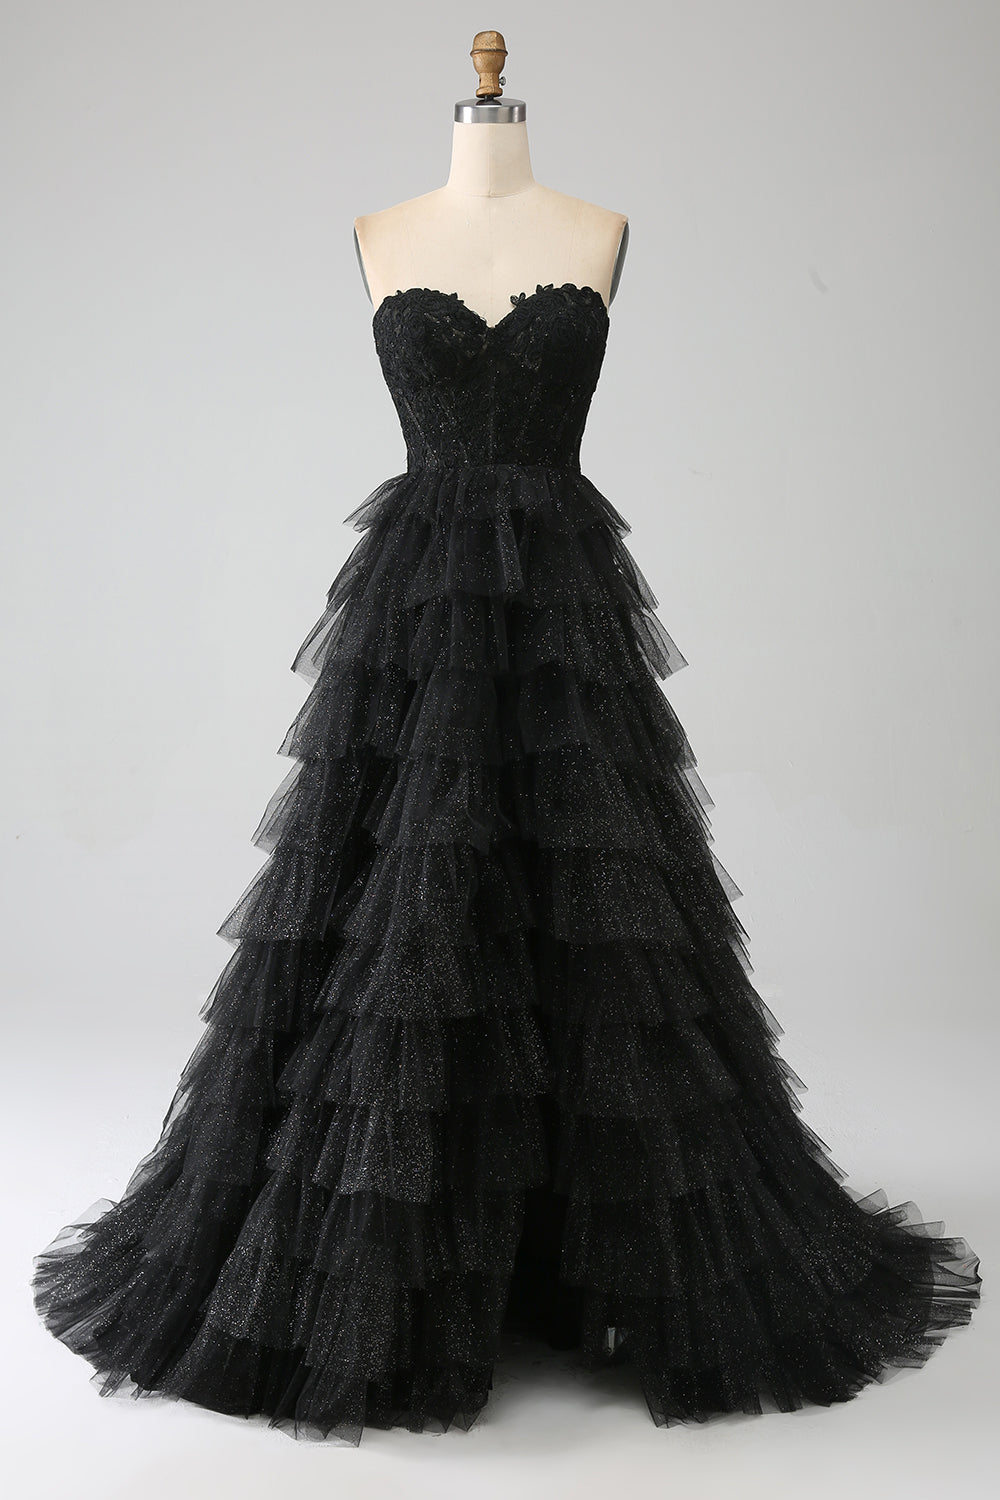 Glitter querida espartilho preto vestido de baile com fenda